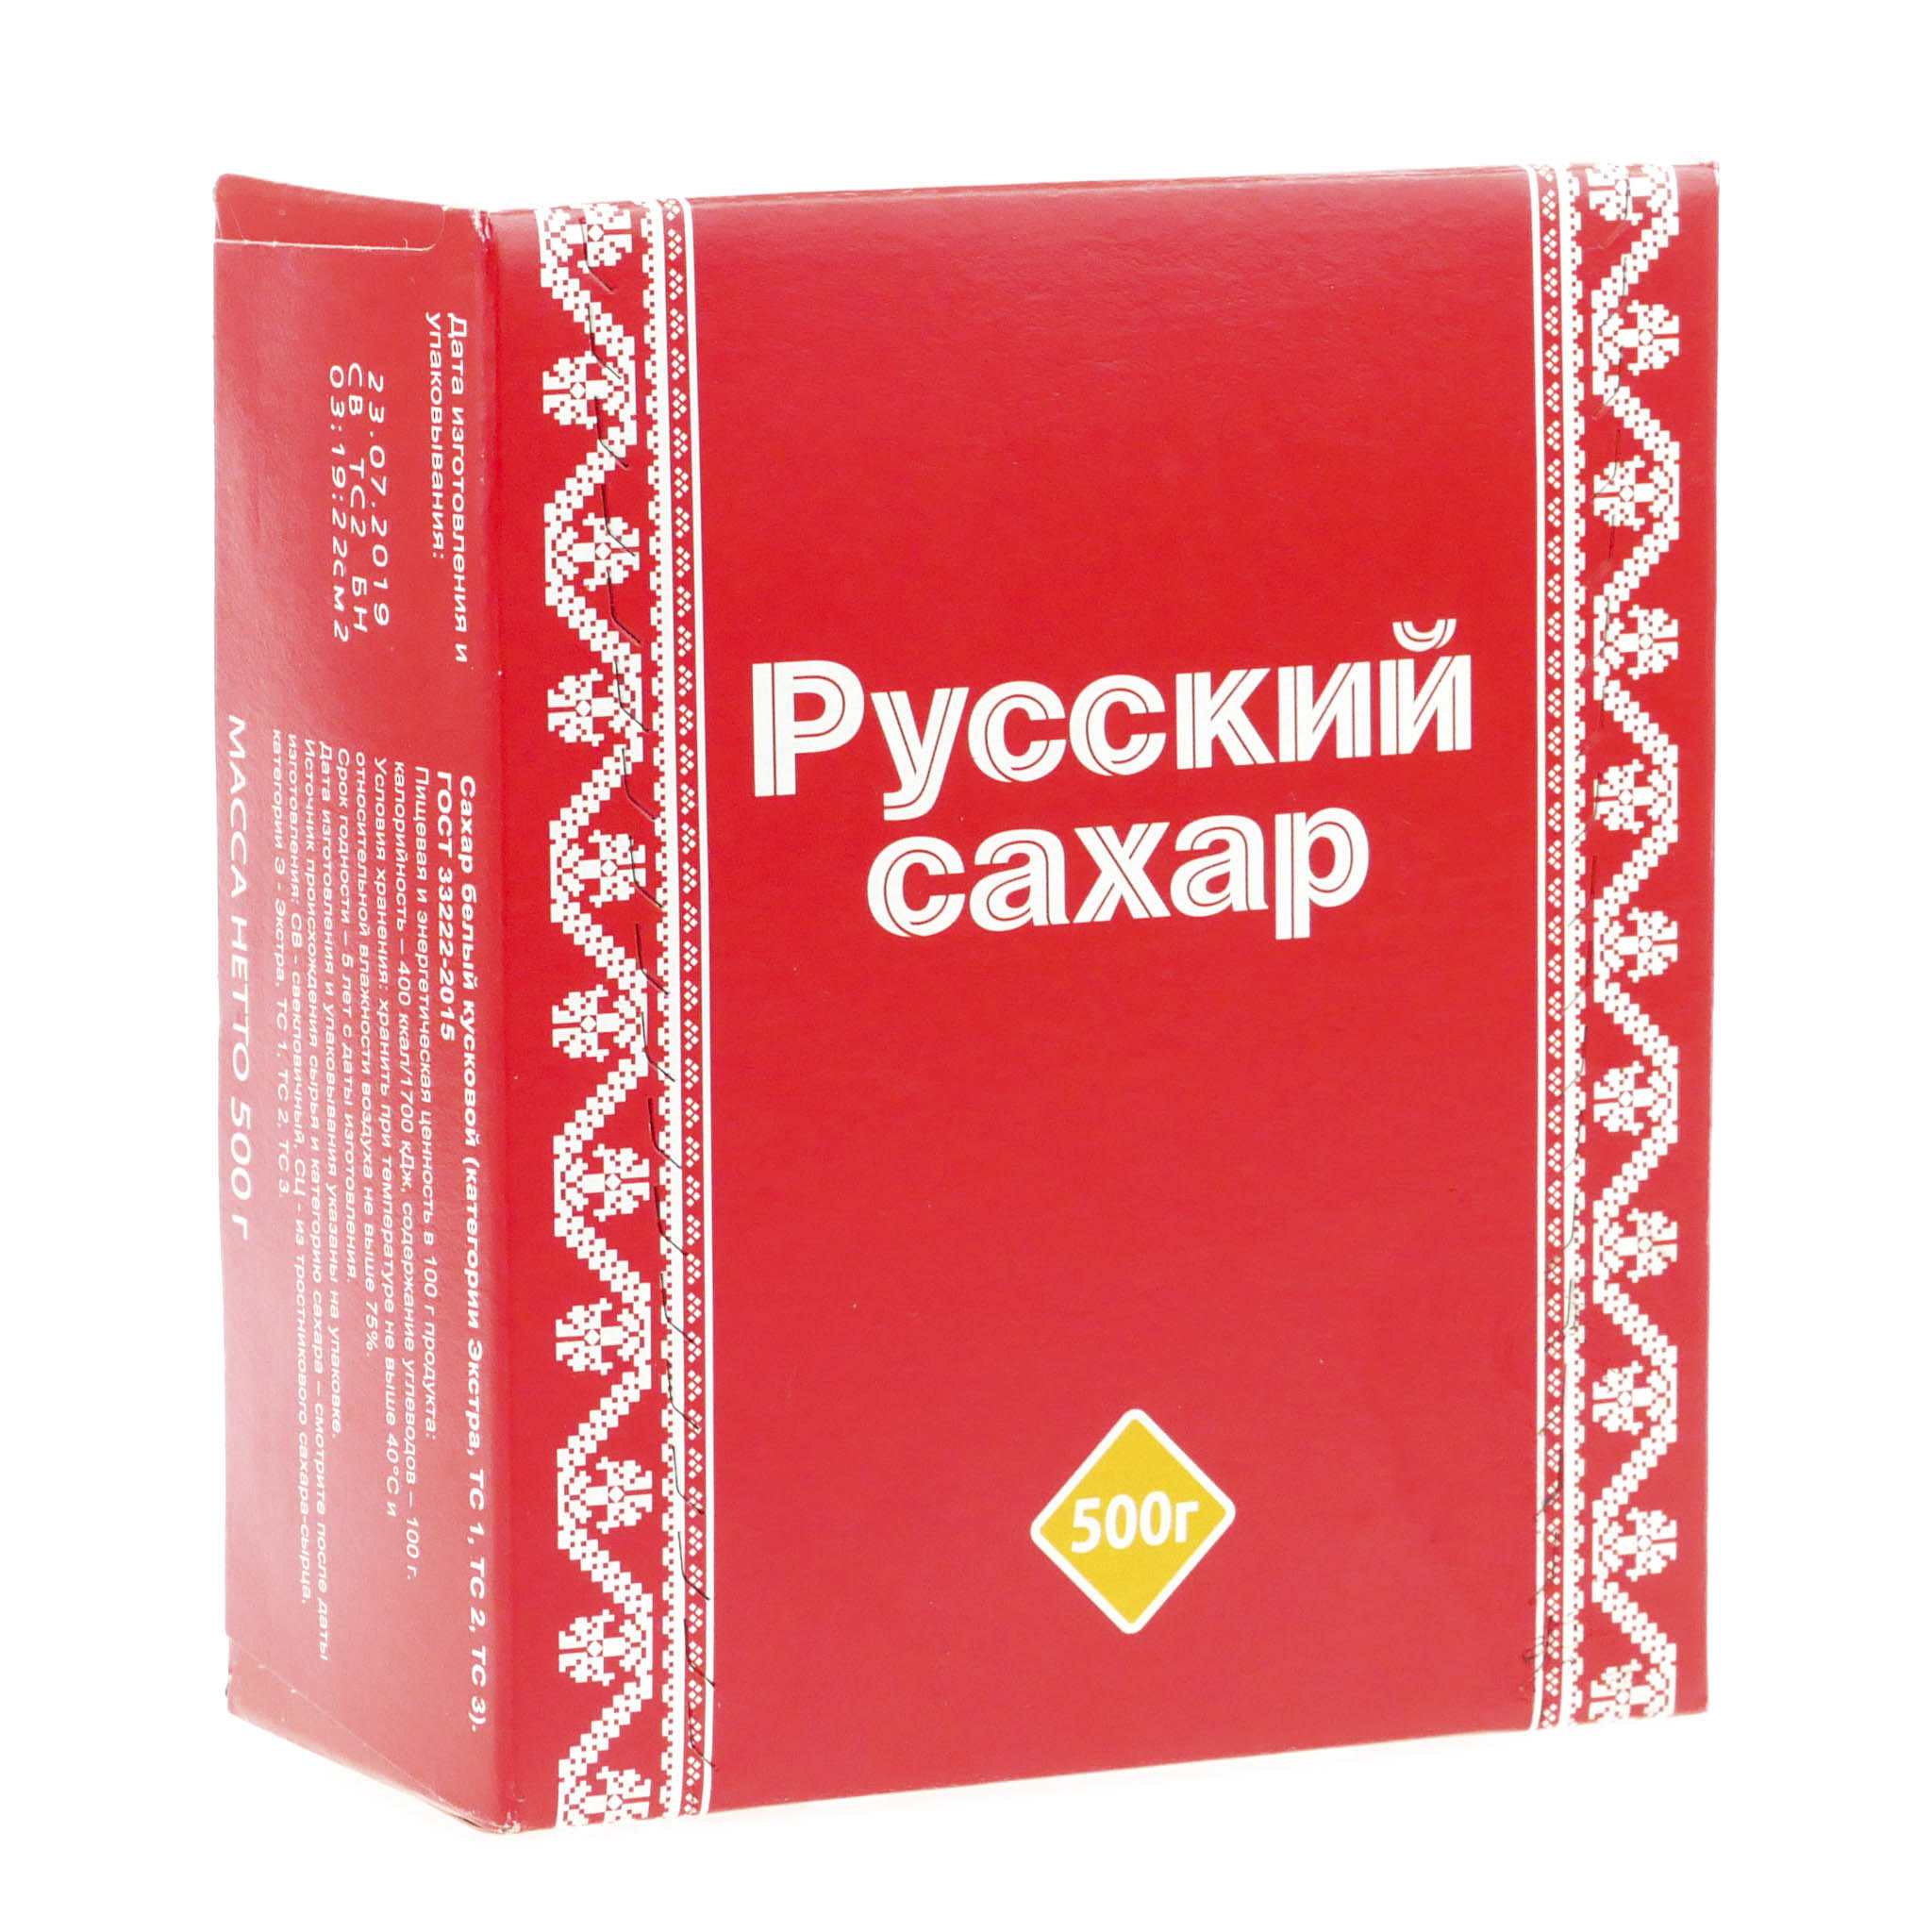 Сахар-рафинад Русский прессованный 500 г сахар рафинад русский 500гр